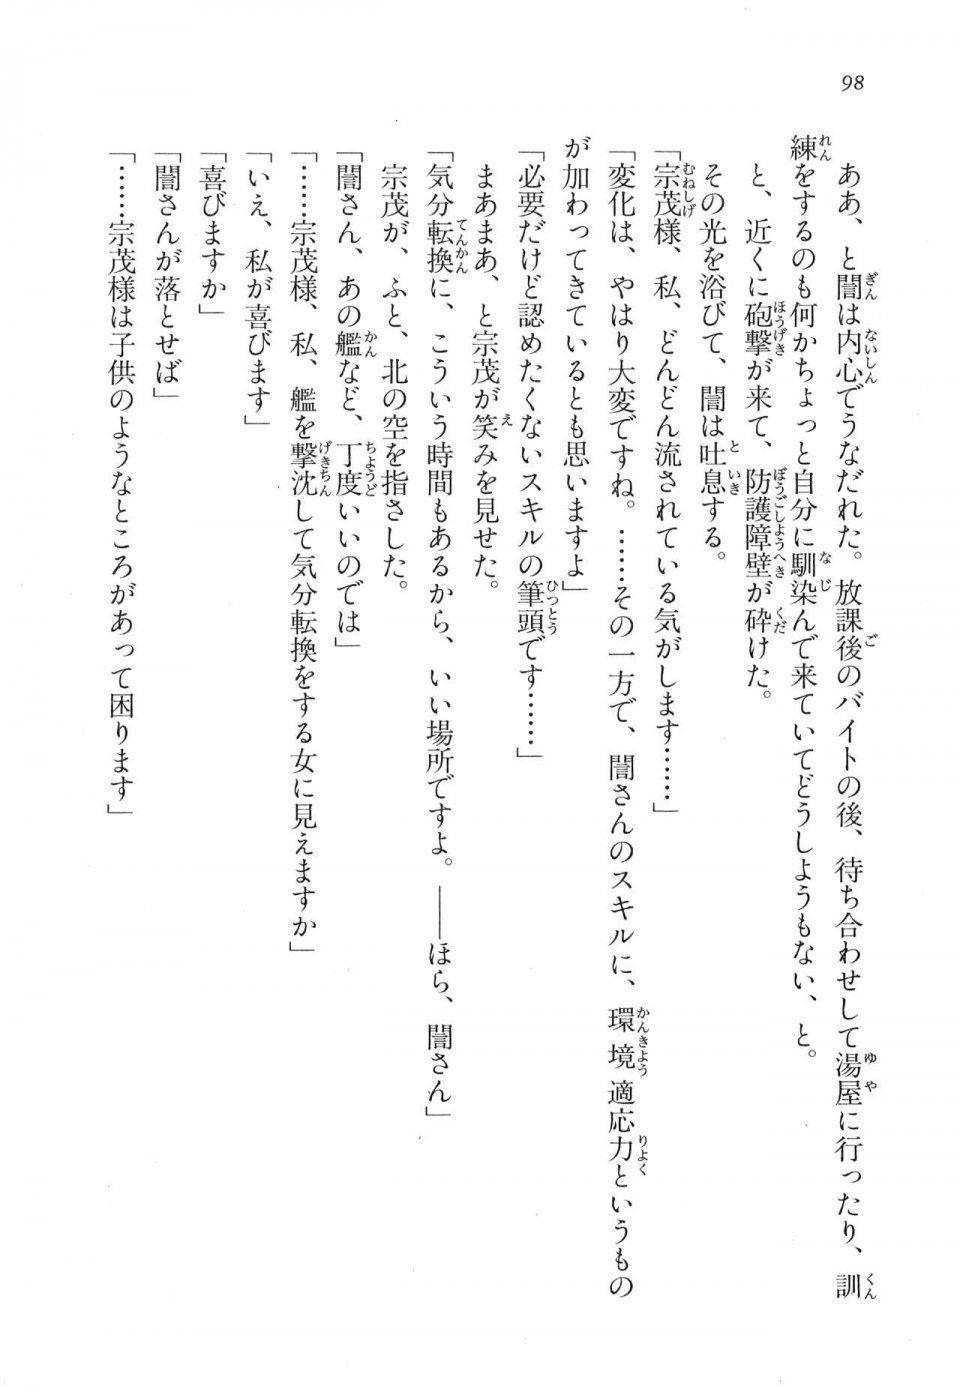 Kyoukai Senjou no Horizon LN Vol 17(7B) - Photo #98